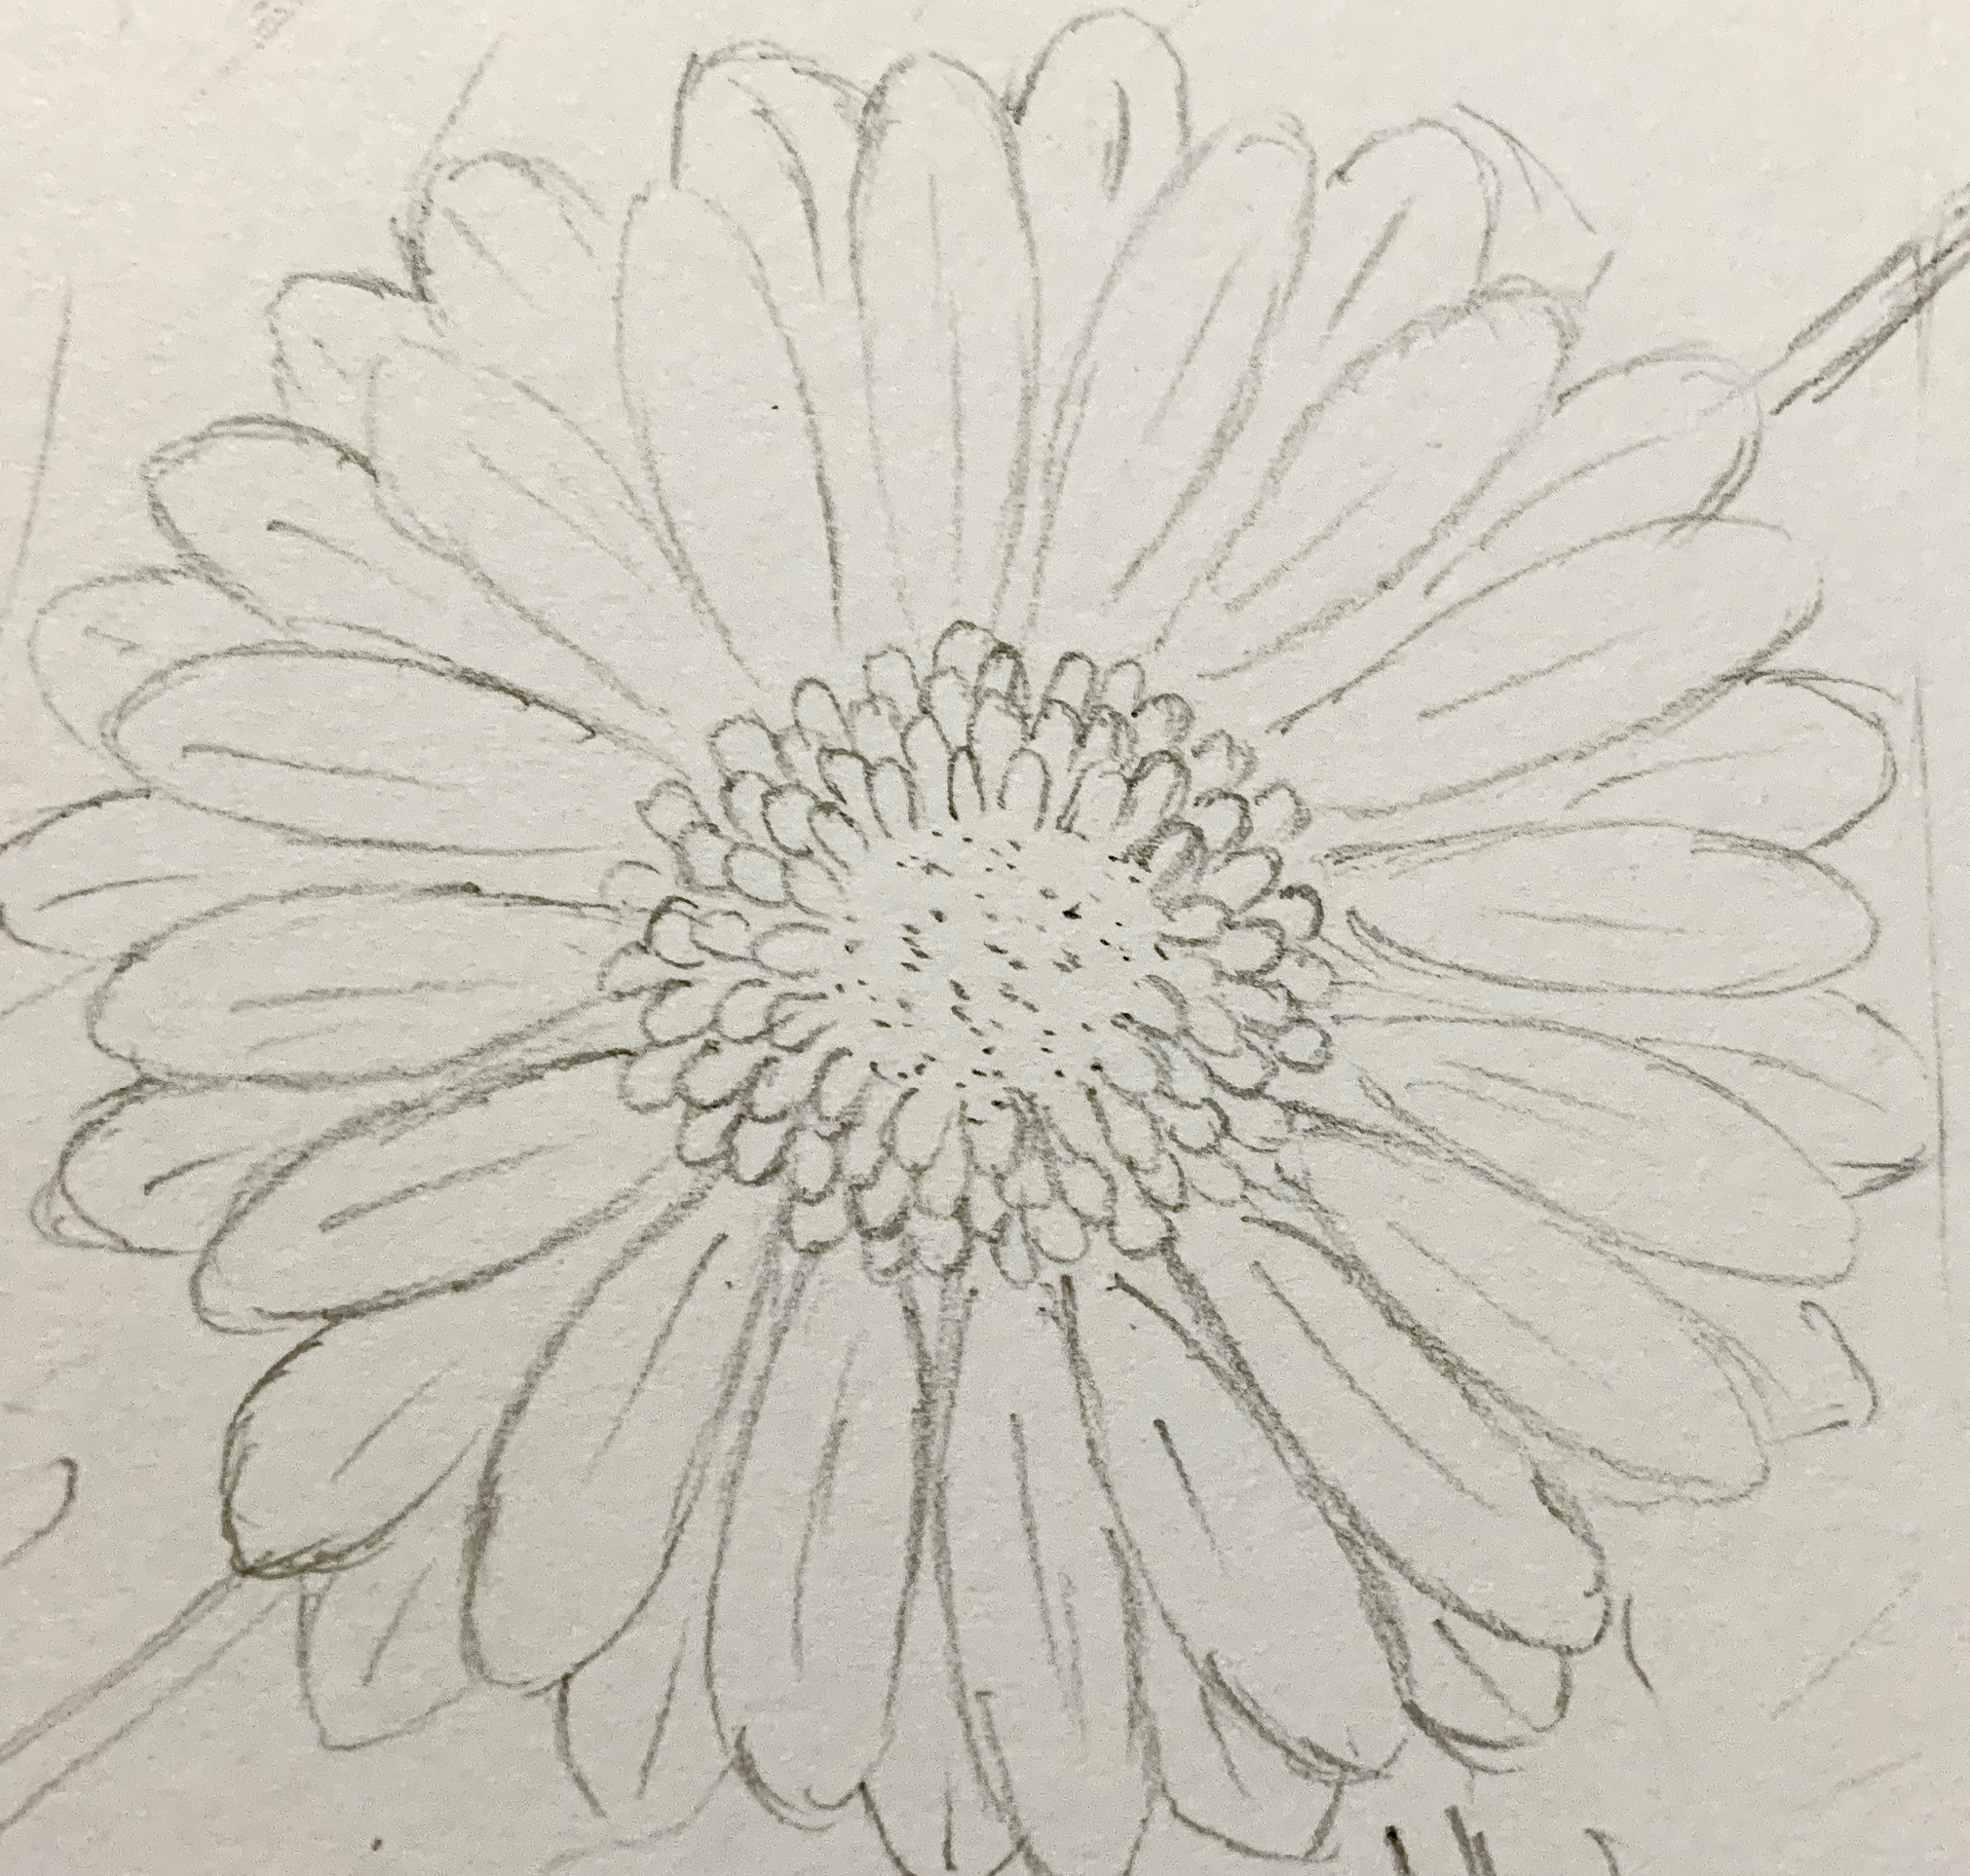 Hãy xem hướng dẫn vẽ hoa đồng tiền của chúng tôi để tạo nên một tác phẩm nghệ thuật độc đáo. Với các bước đơn giản, bạn có thể tạo nên những bông hoa thật sự tuyệt đẹp.